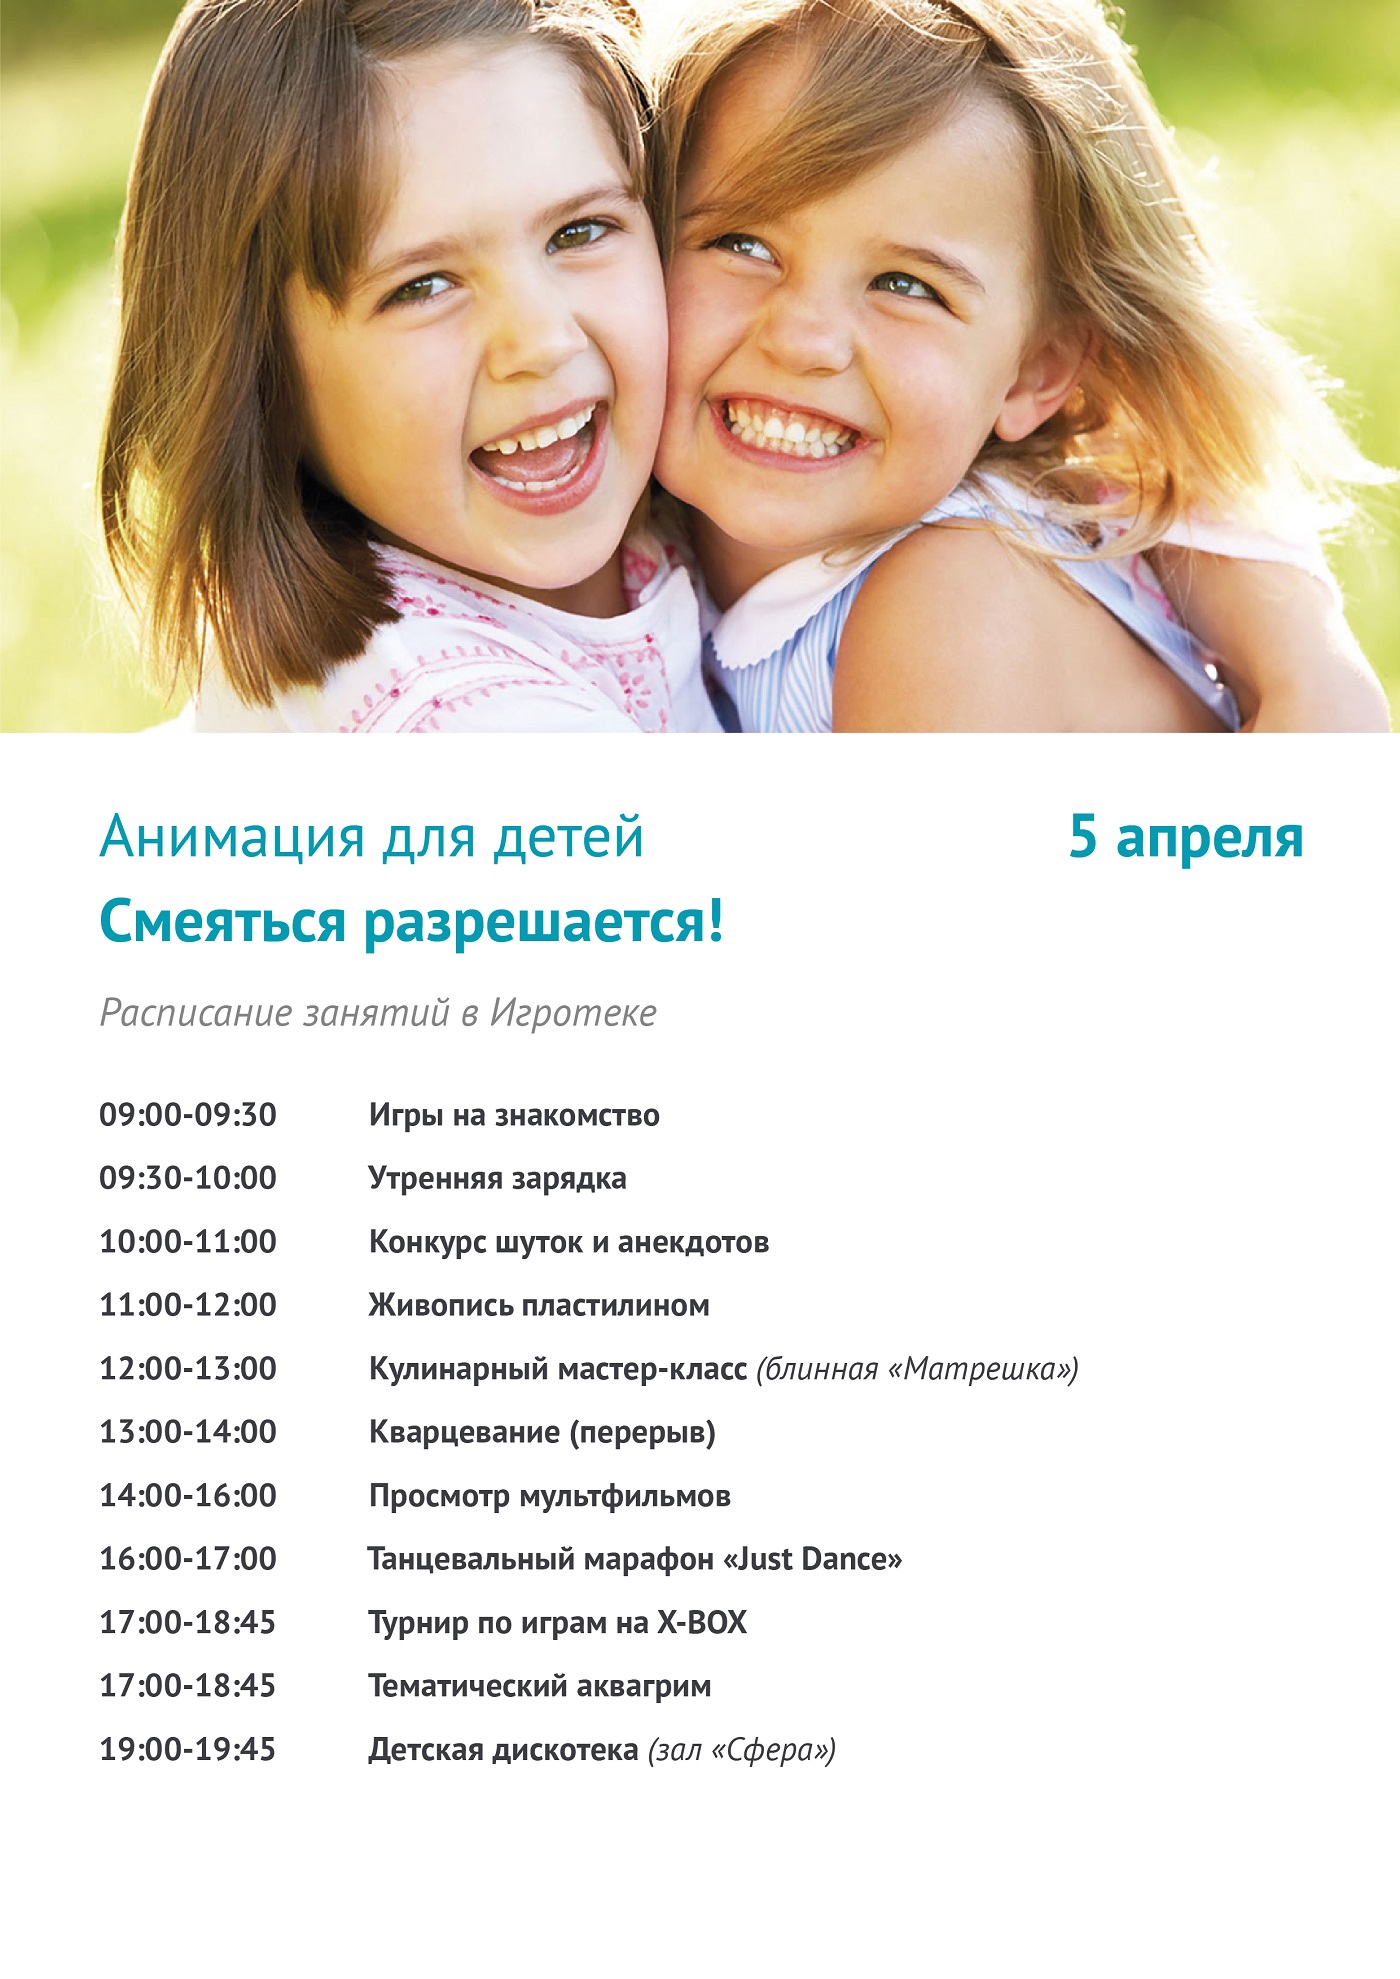 Программы для детей в москве. Анимационная программа. Детская анимационная программа. Анимационная программа для малышей. Анимационные программы для детей в отеле.